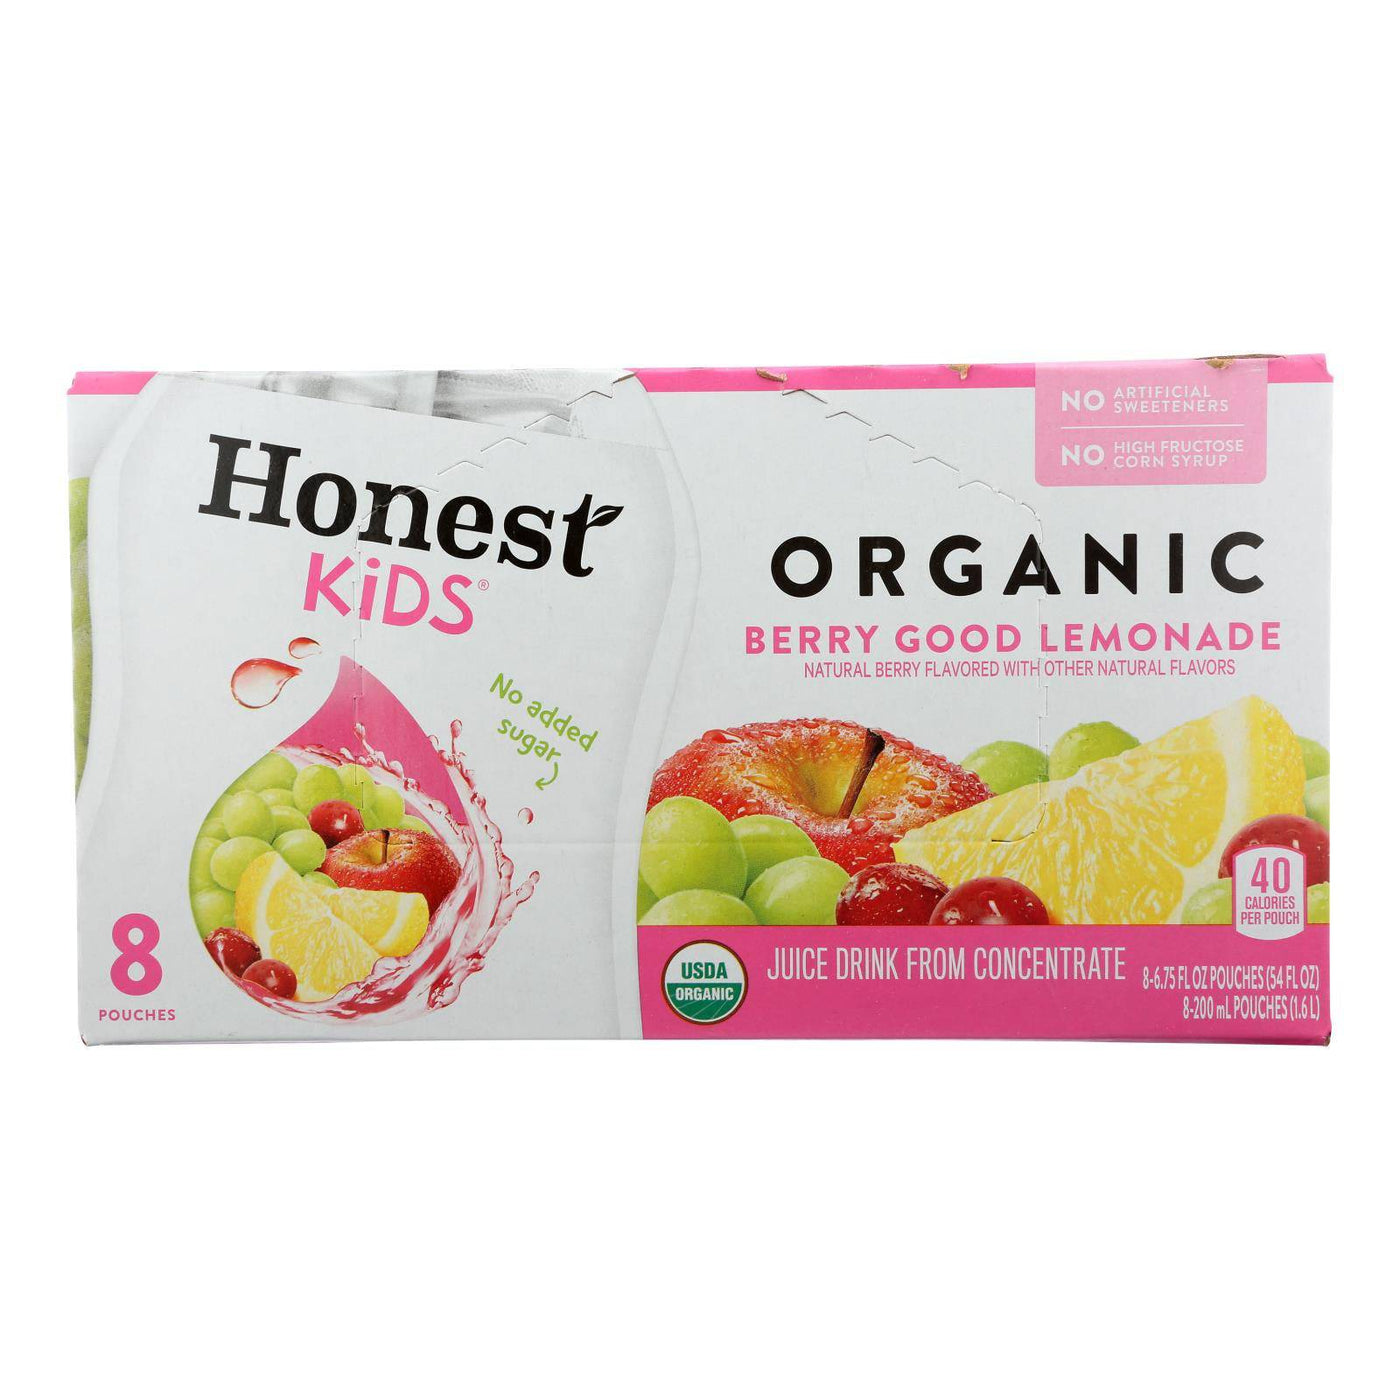 Buy Honest Kids Honest Kids Berry Good Lemon - Berry Good Lemon - Case Of 4 - 6.75 Fl Oz.  at OnlyNaturals.us